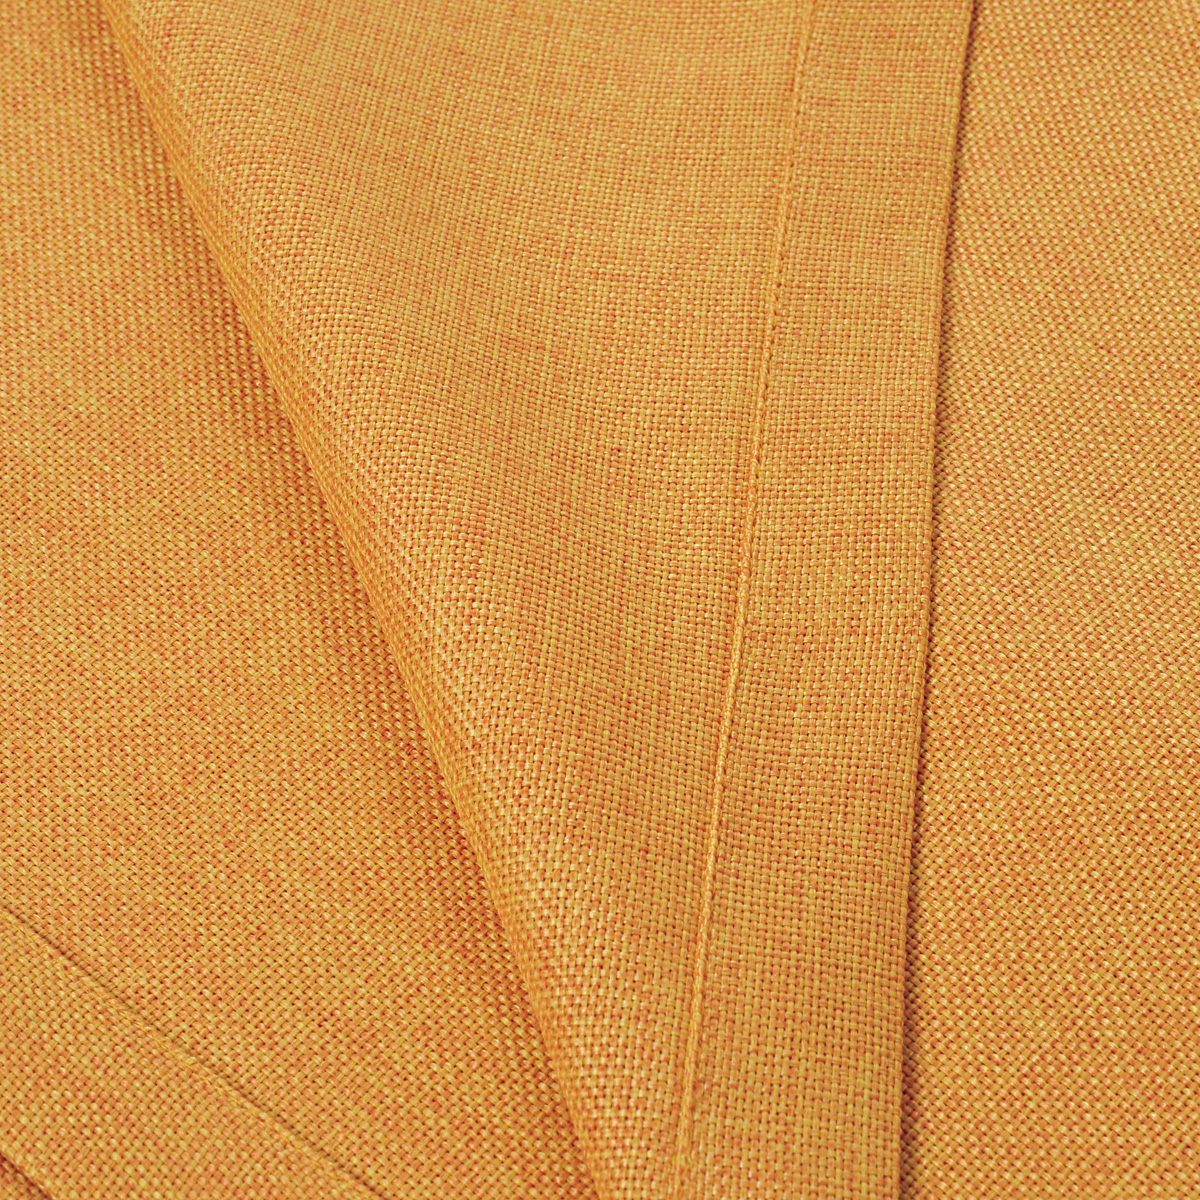 Скатерть "Schaefer", прямоугольная, цвет: оранжевый, 150 x 200 см. 4129